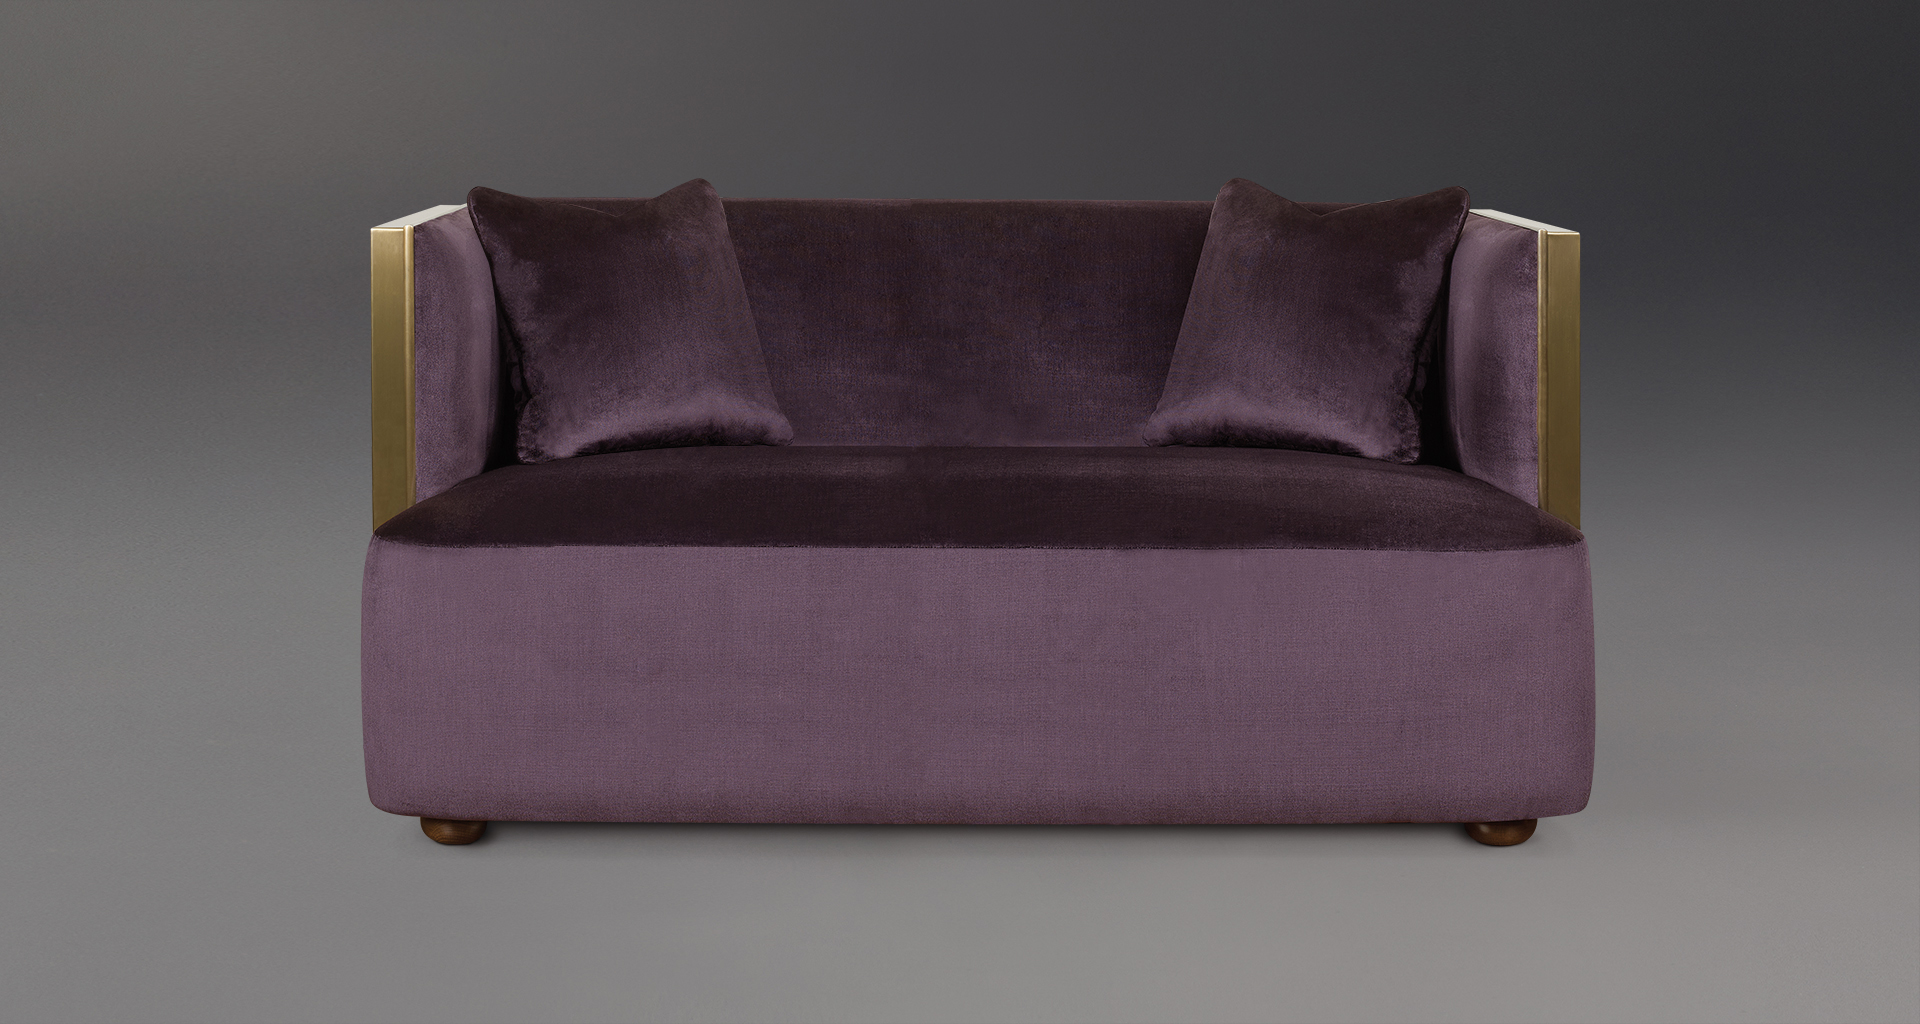 Boccaccio is a bronze sofa covered in fabric or leather, from Promemoria's catalogue | Promemoria